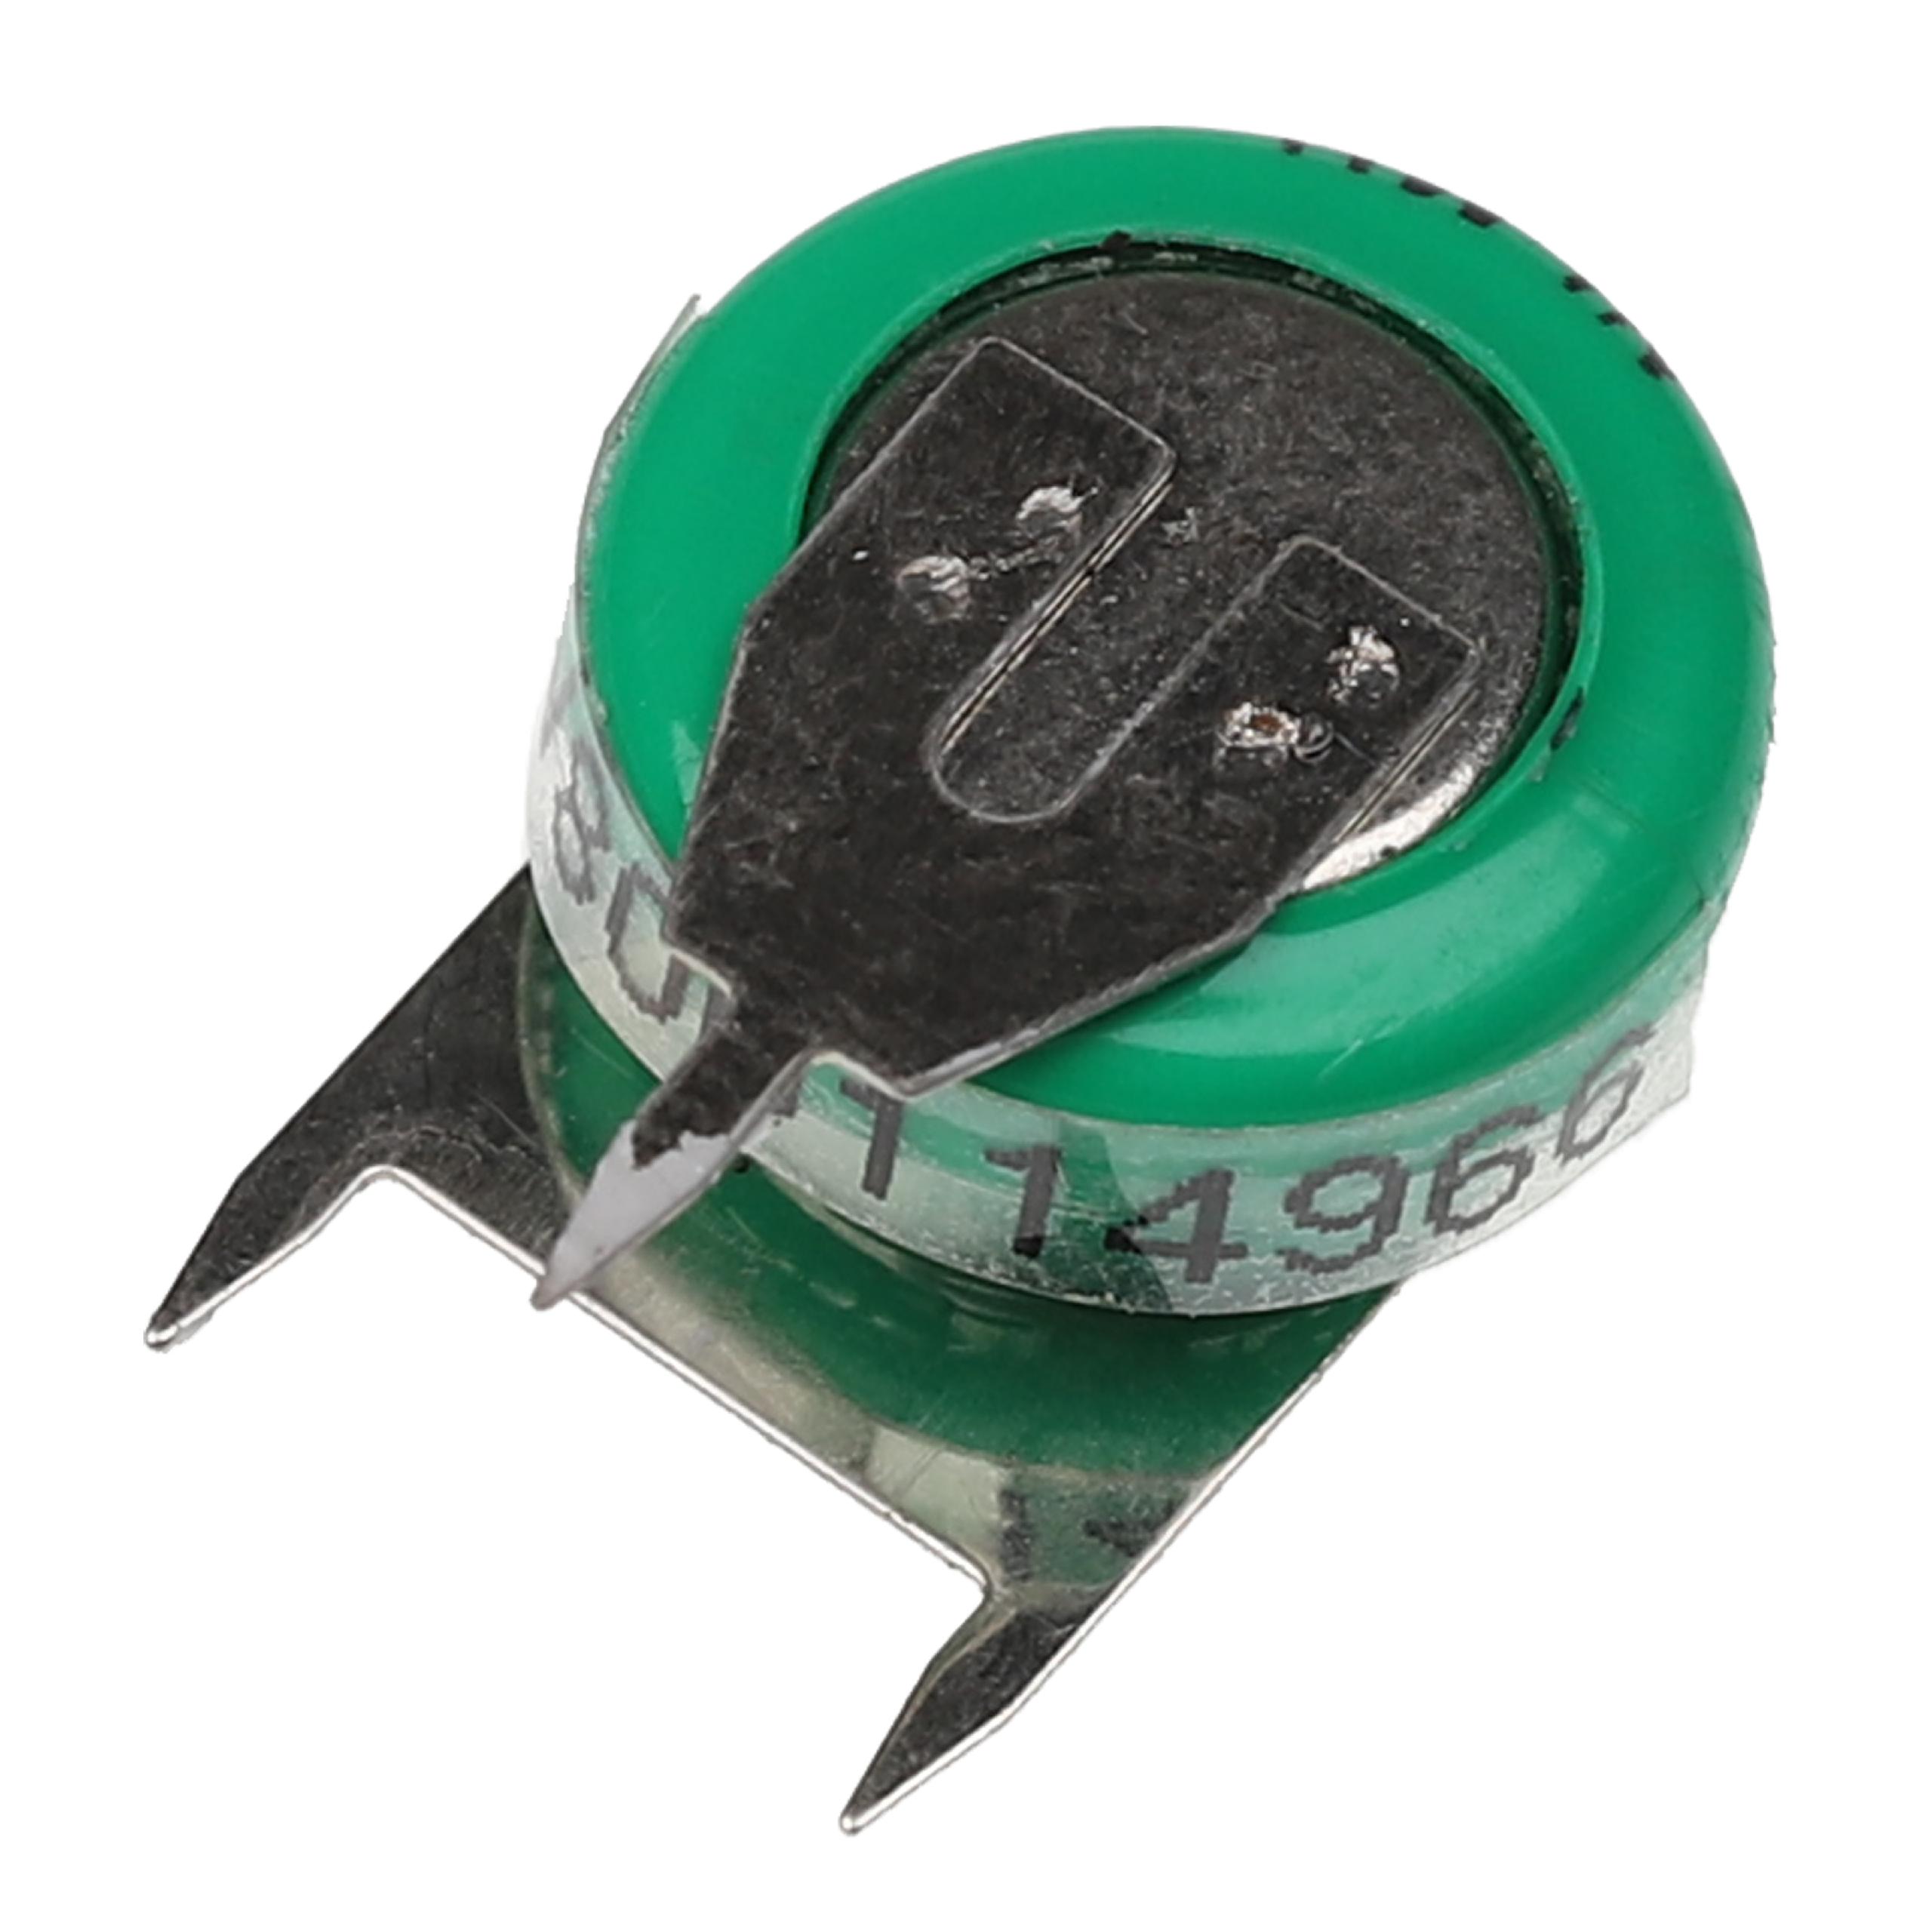 Batteria a bottone (1x cella) tipo V40H 3 pin sostituisce V40H per modellismo, luci solari ecc. 